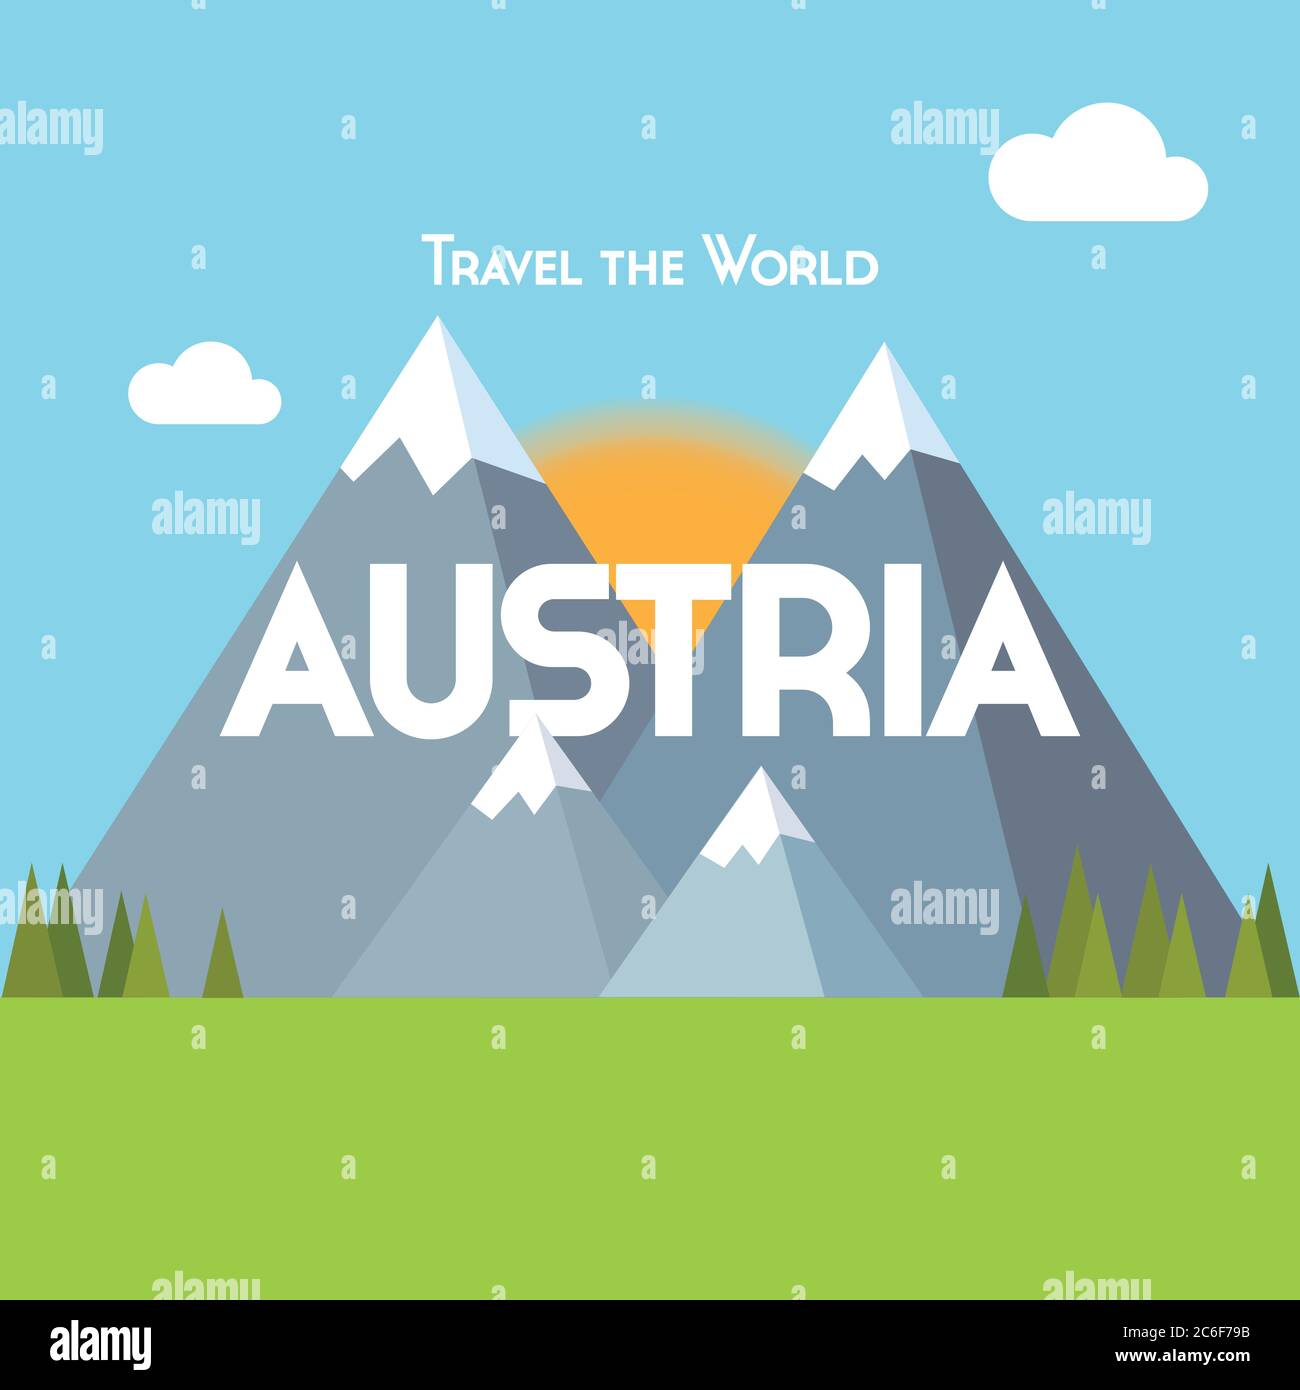 Affiche de voyage à plat - thème autrichien, montrant des montagnes enneigées, des forêts de pins et des prairies verdoyantes, avec le soleil levant derrière. Forme vectorielle EPS10 Illustration de Vecteur